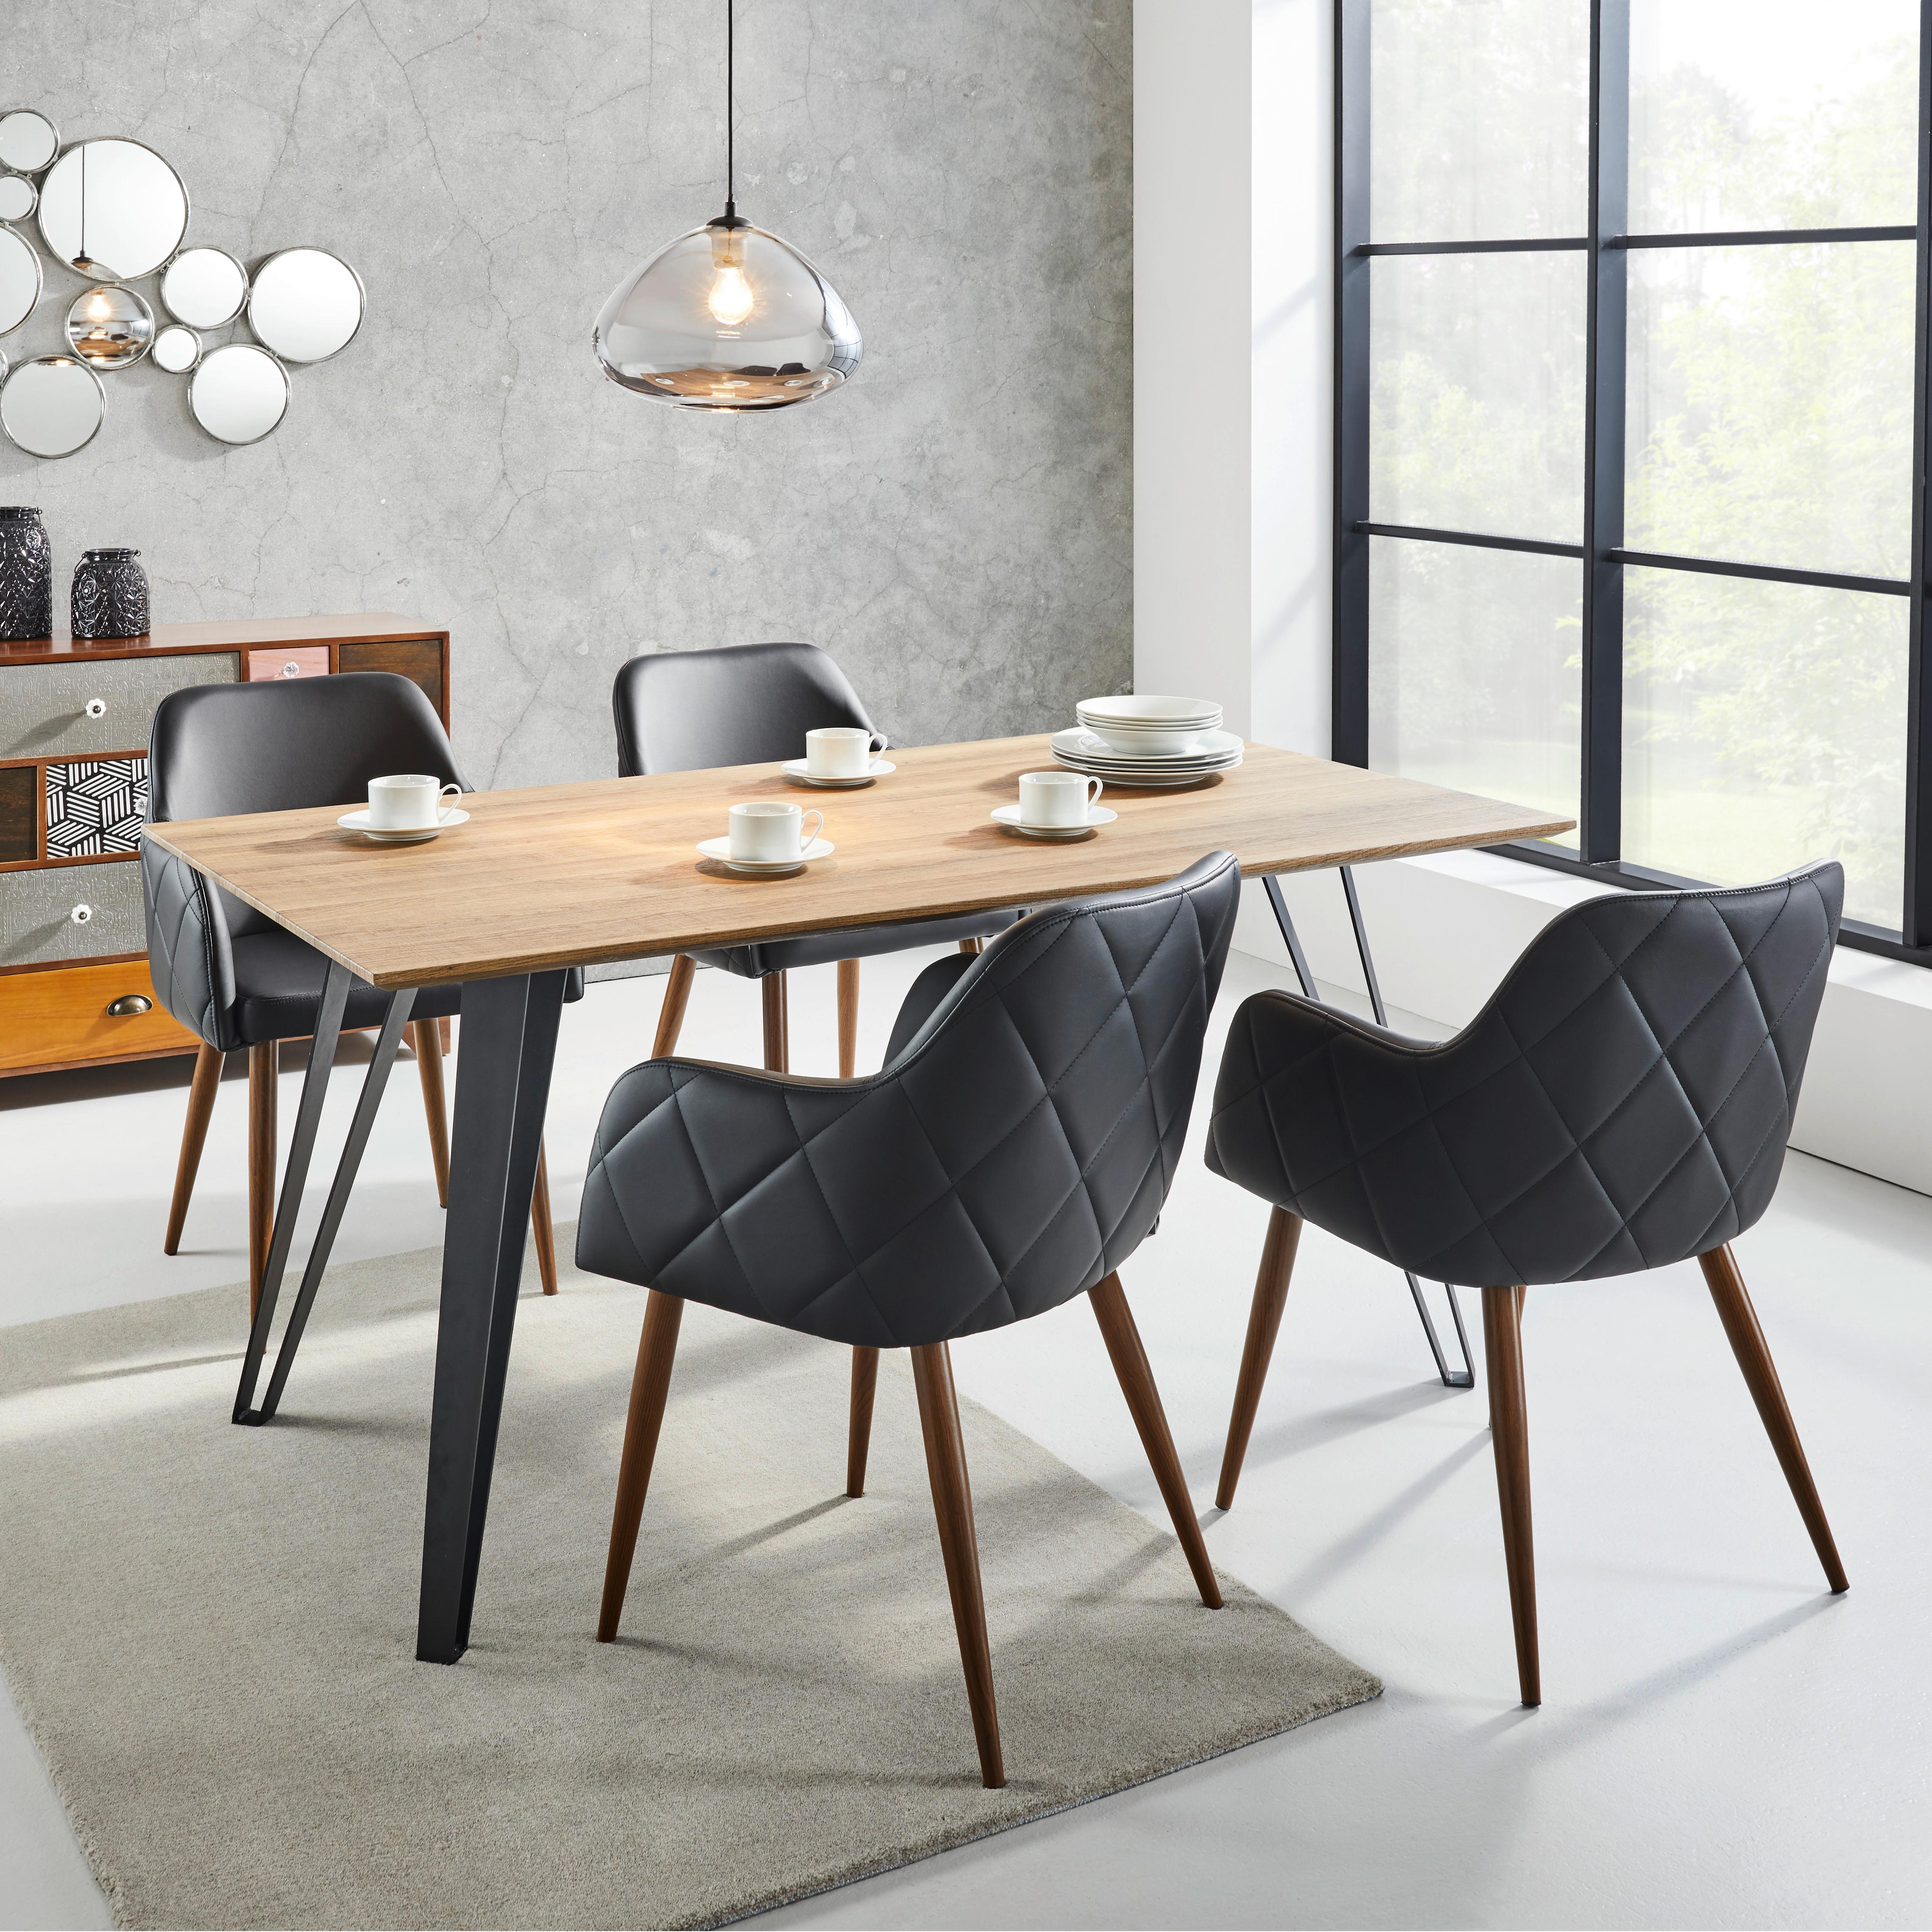 Jídelní Stůl Gino Přírodní 160x90cm - barvy teak/černá, Moderní, kov/dřevo (160/90/76cm) - Modern Living